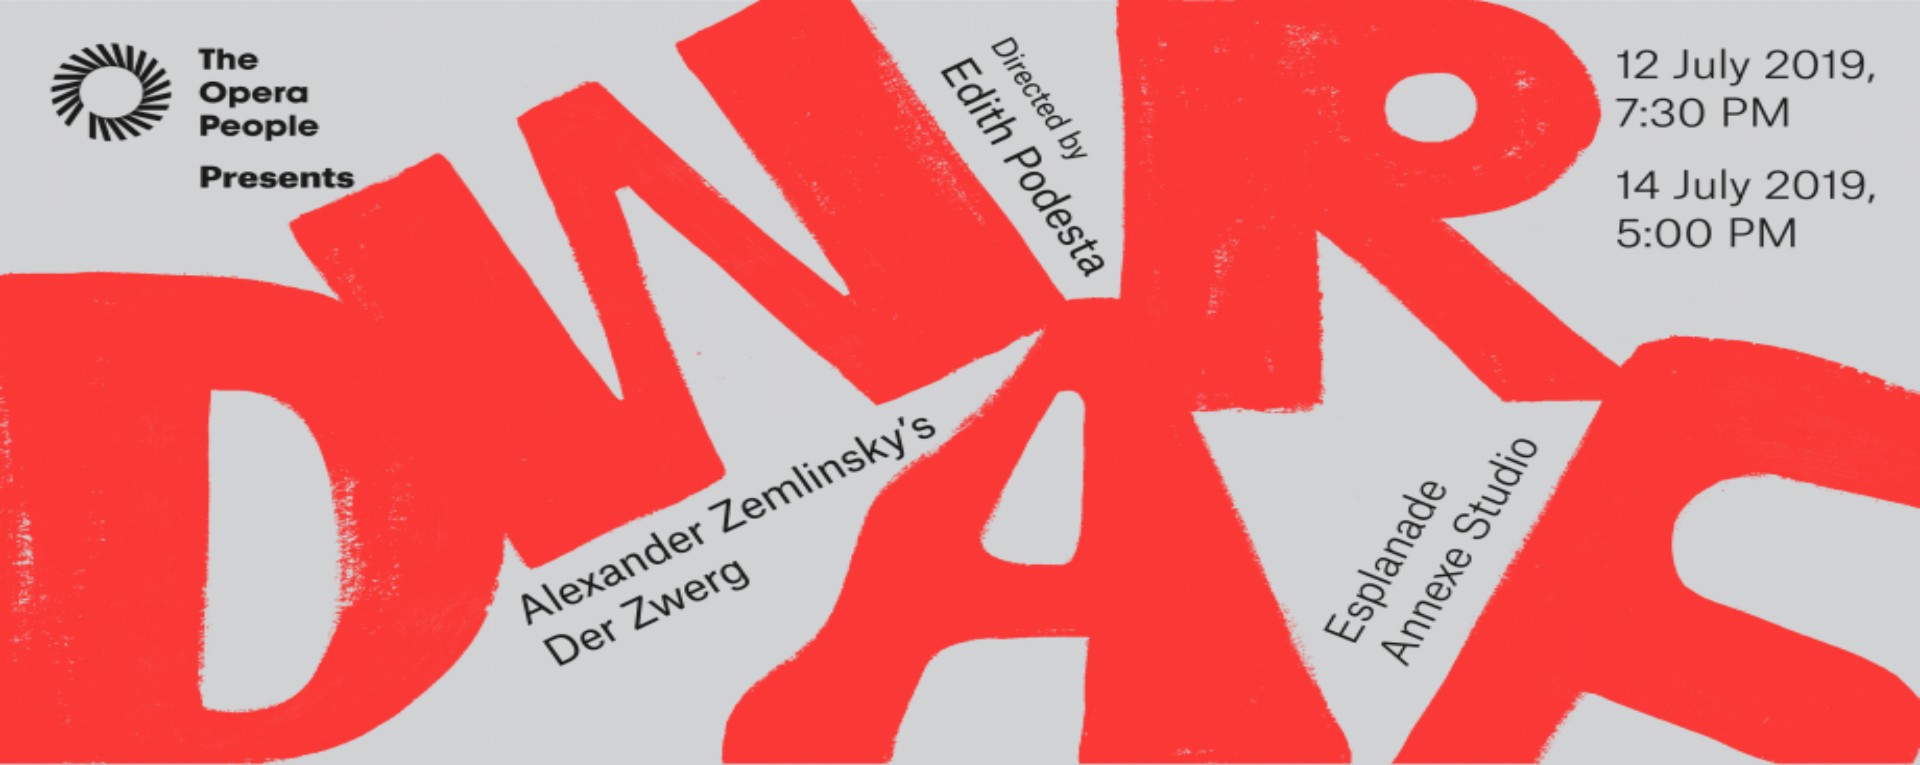 The Opera People Presents: Dwarf - Alexander Zemlinsky's Der Zwerg